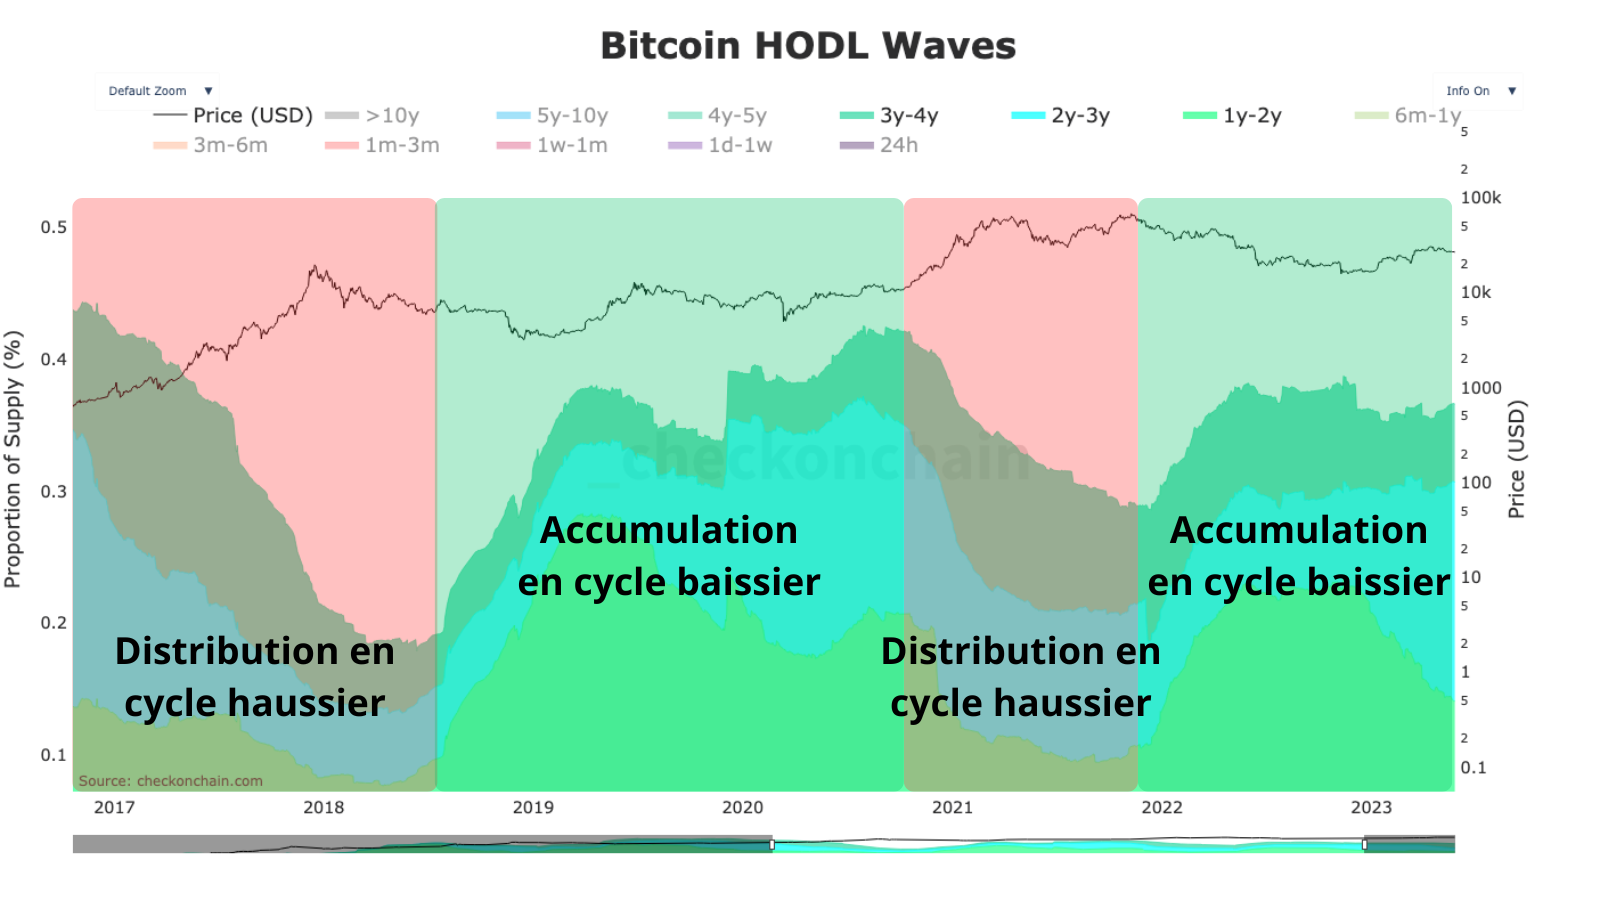 Représentation des vagues de distribution et d’accumulation de la part des investisseurs de +6 mois. En cycle haussier, on distribue, en cycle baissier, on accumule.